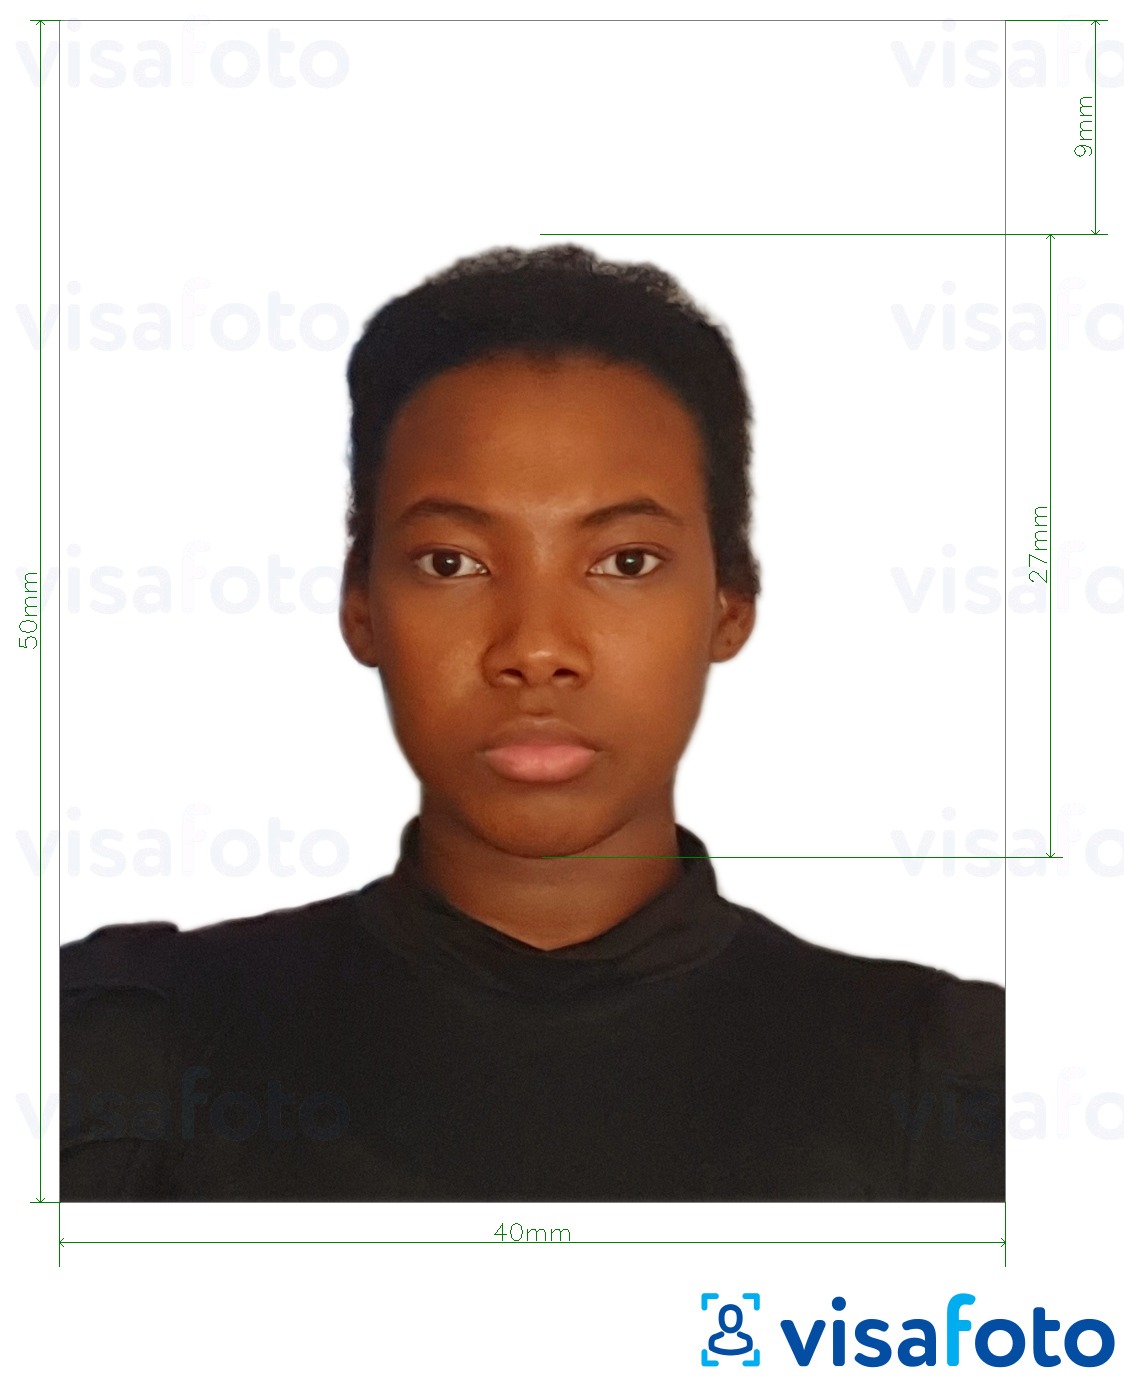 Ejemplo de foto para Cédula de ciudadania de Colombia 4x5 cm (40x50 mm) con la especificación del tamaño exacto